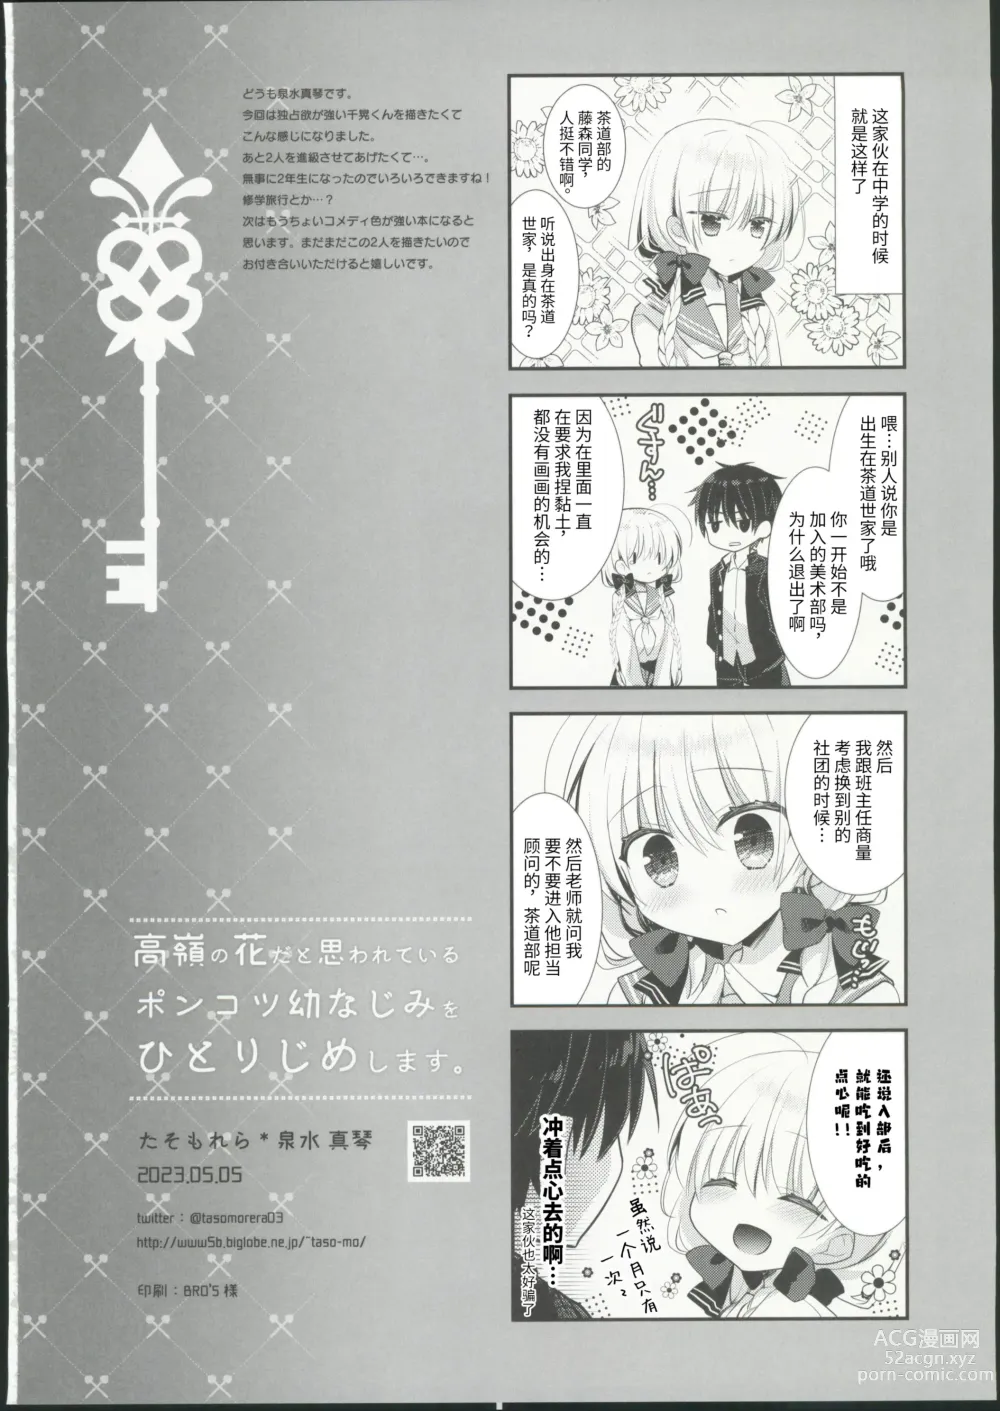 Page 33 of doujinshi Takane no Hana dato Omowareteiru Ponkotsu Osananajimi wo Hitorijime Shimasu.